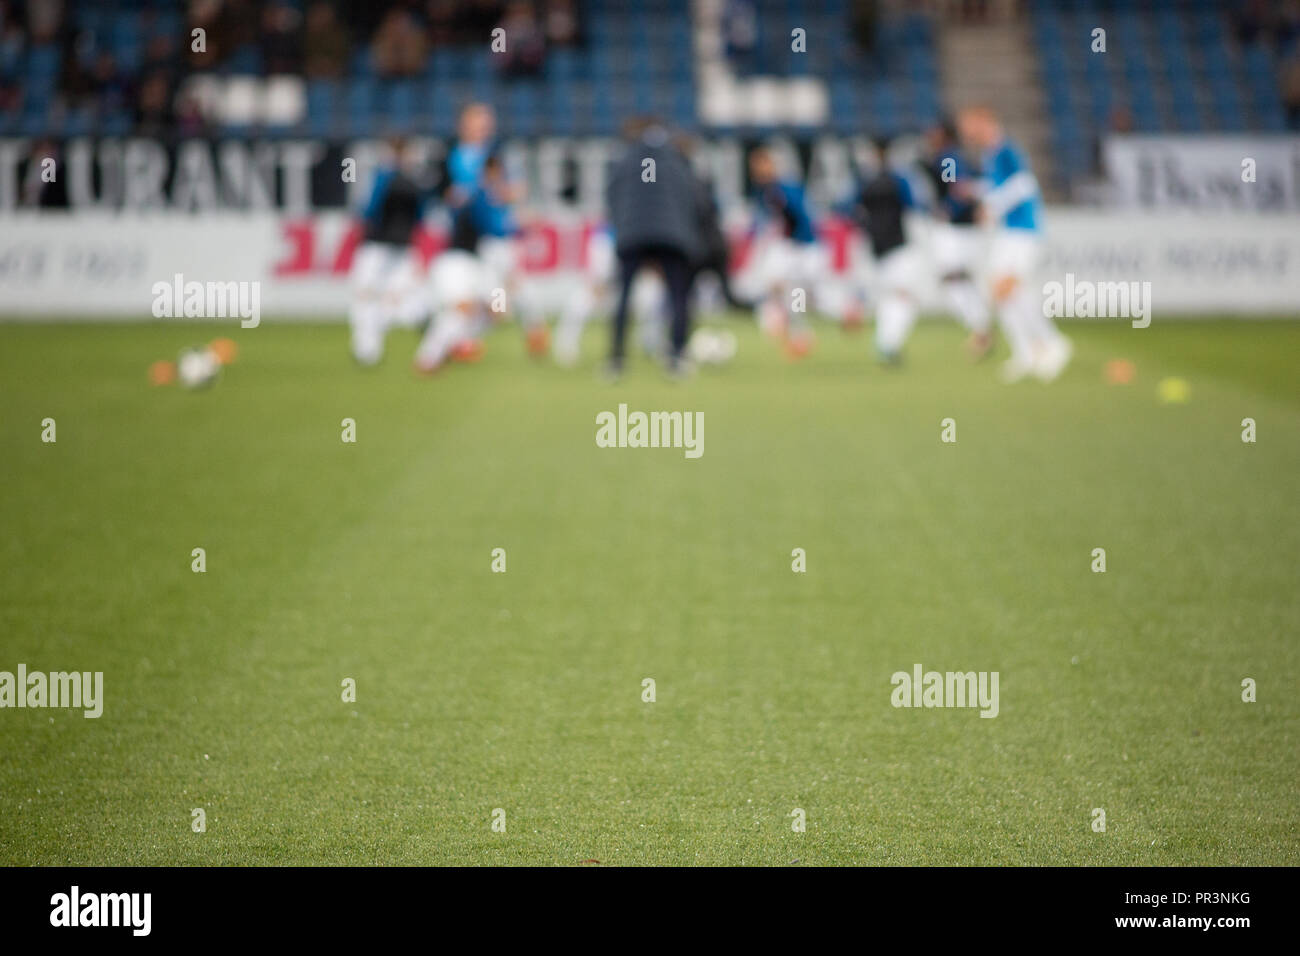 Un equipo de fútbol se está preparando para jugar un partido. Foto de stock